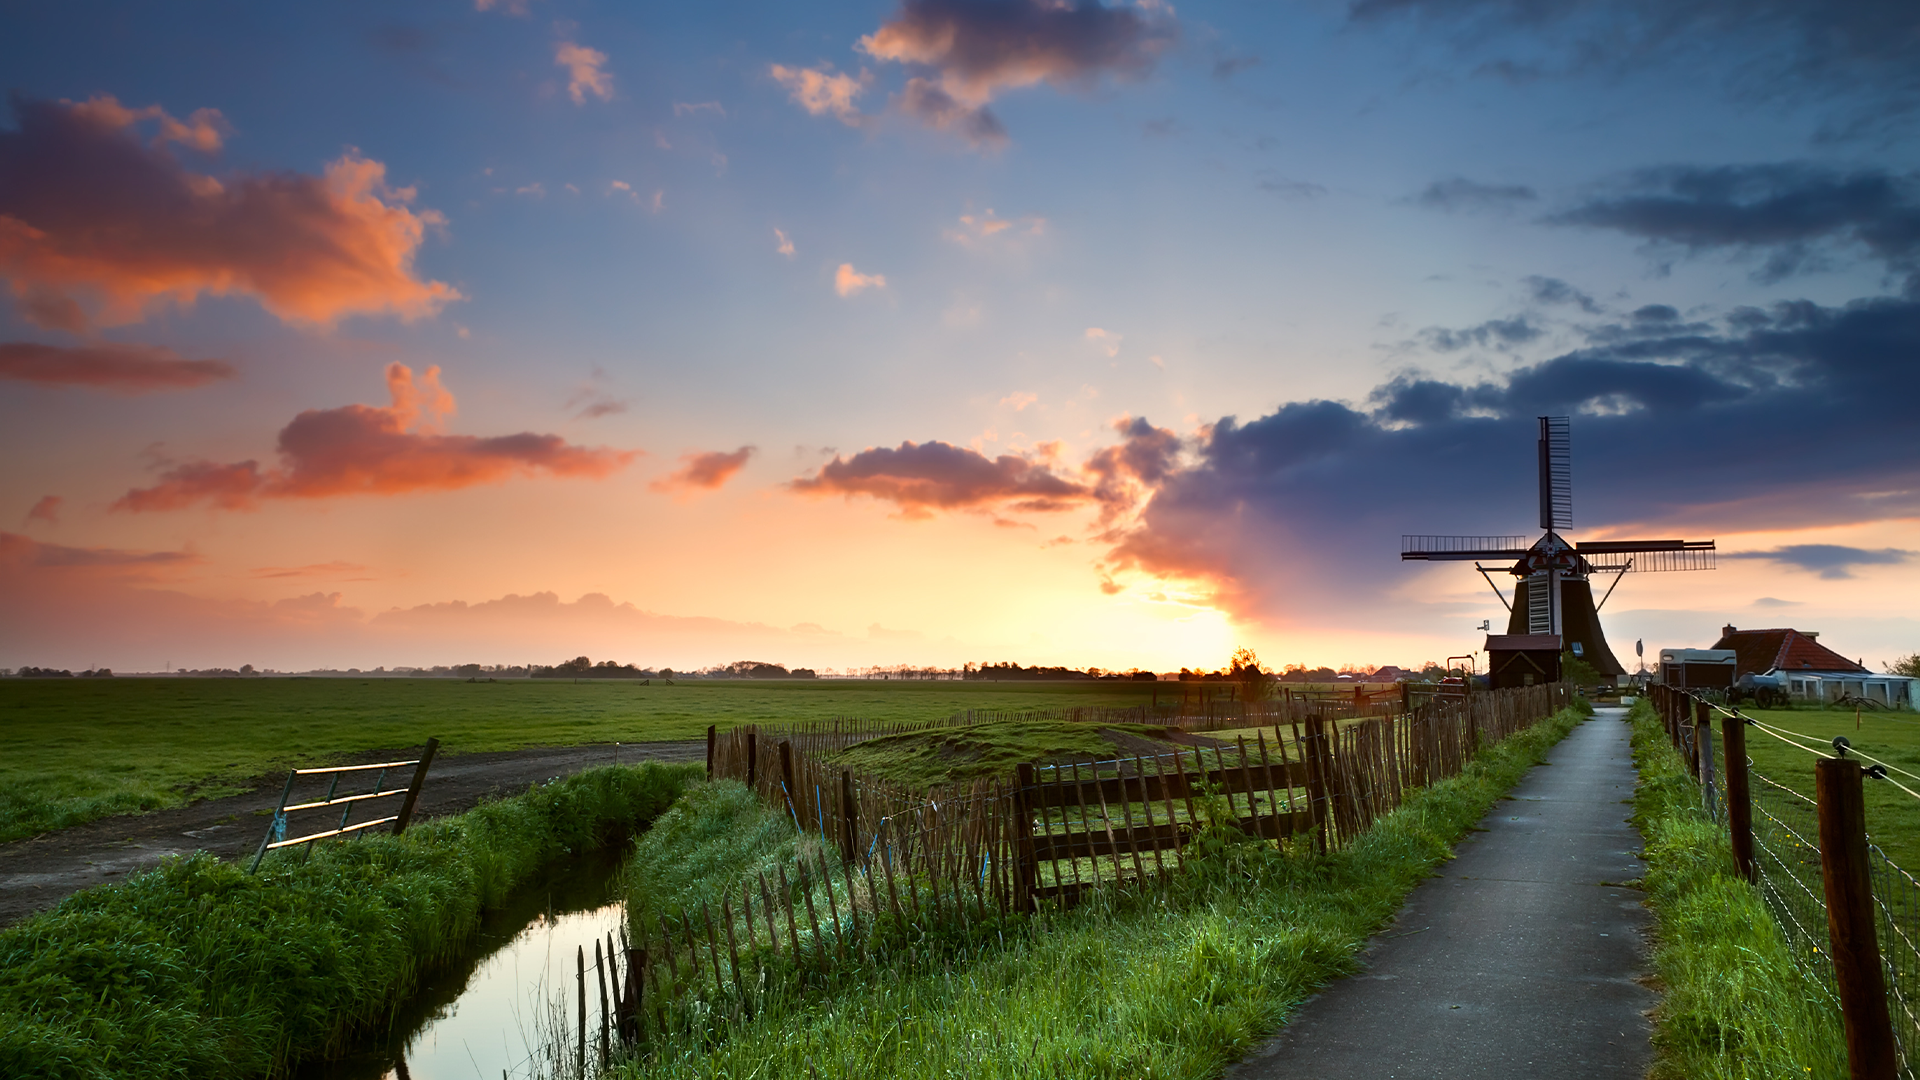 Landelijk gebied Nederland met windmolen in de achtergrond tijdens zonsondergang